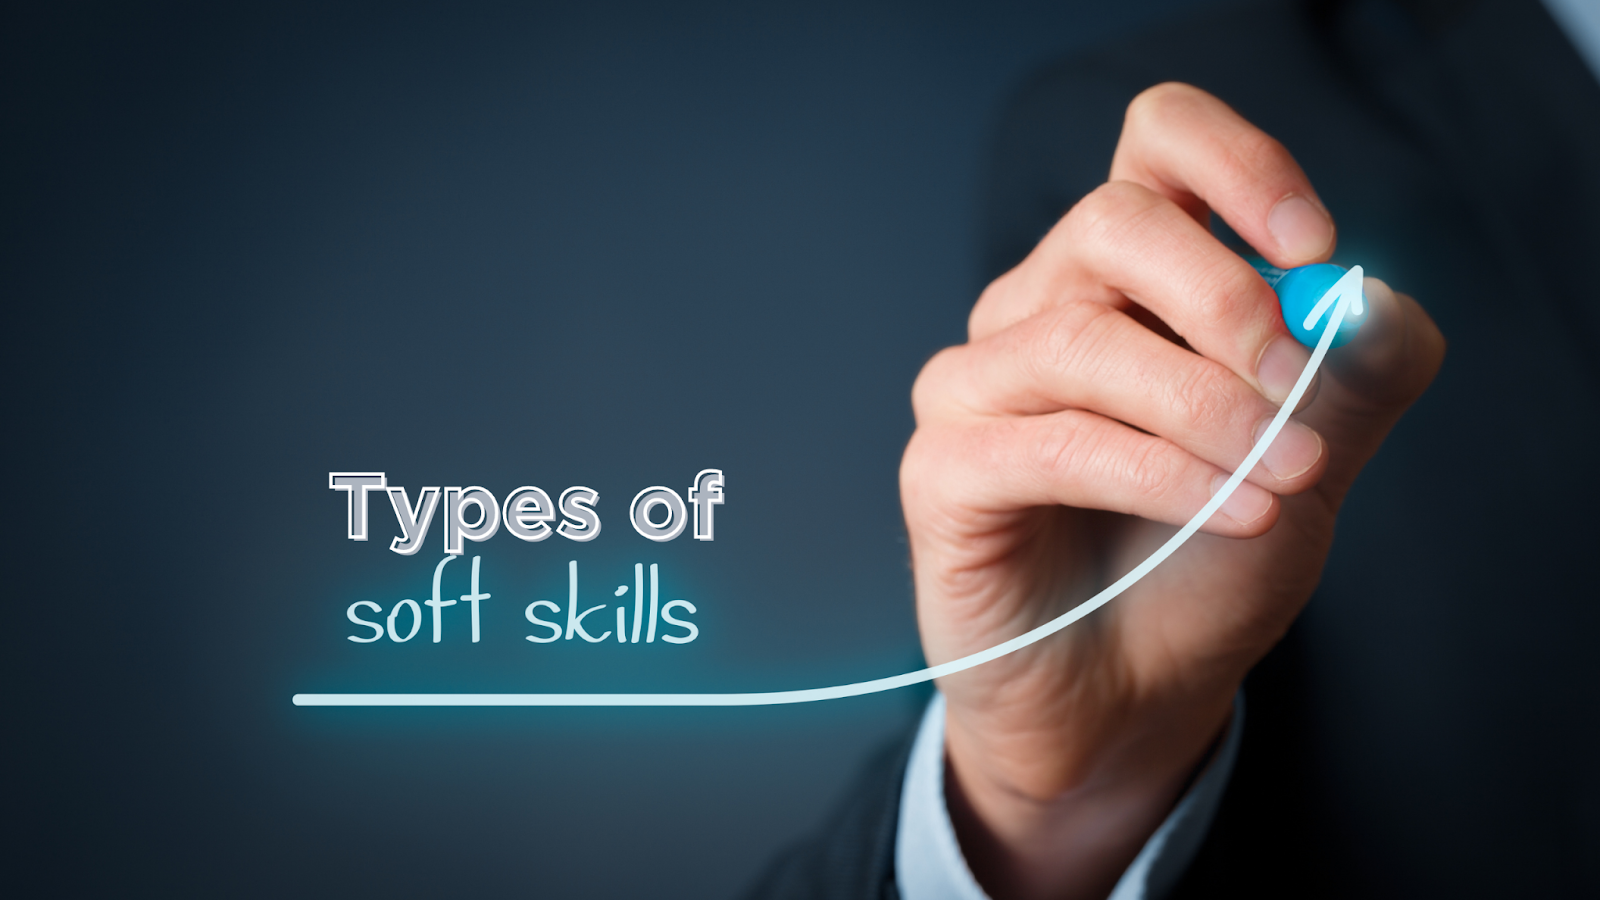 Types Of Soft Skills

